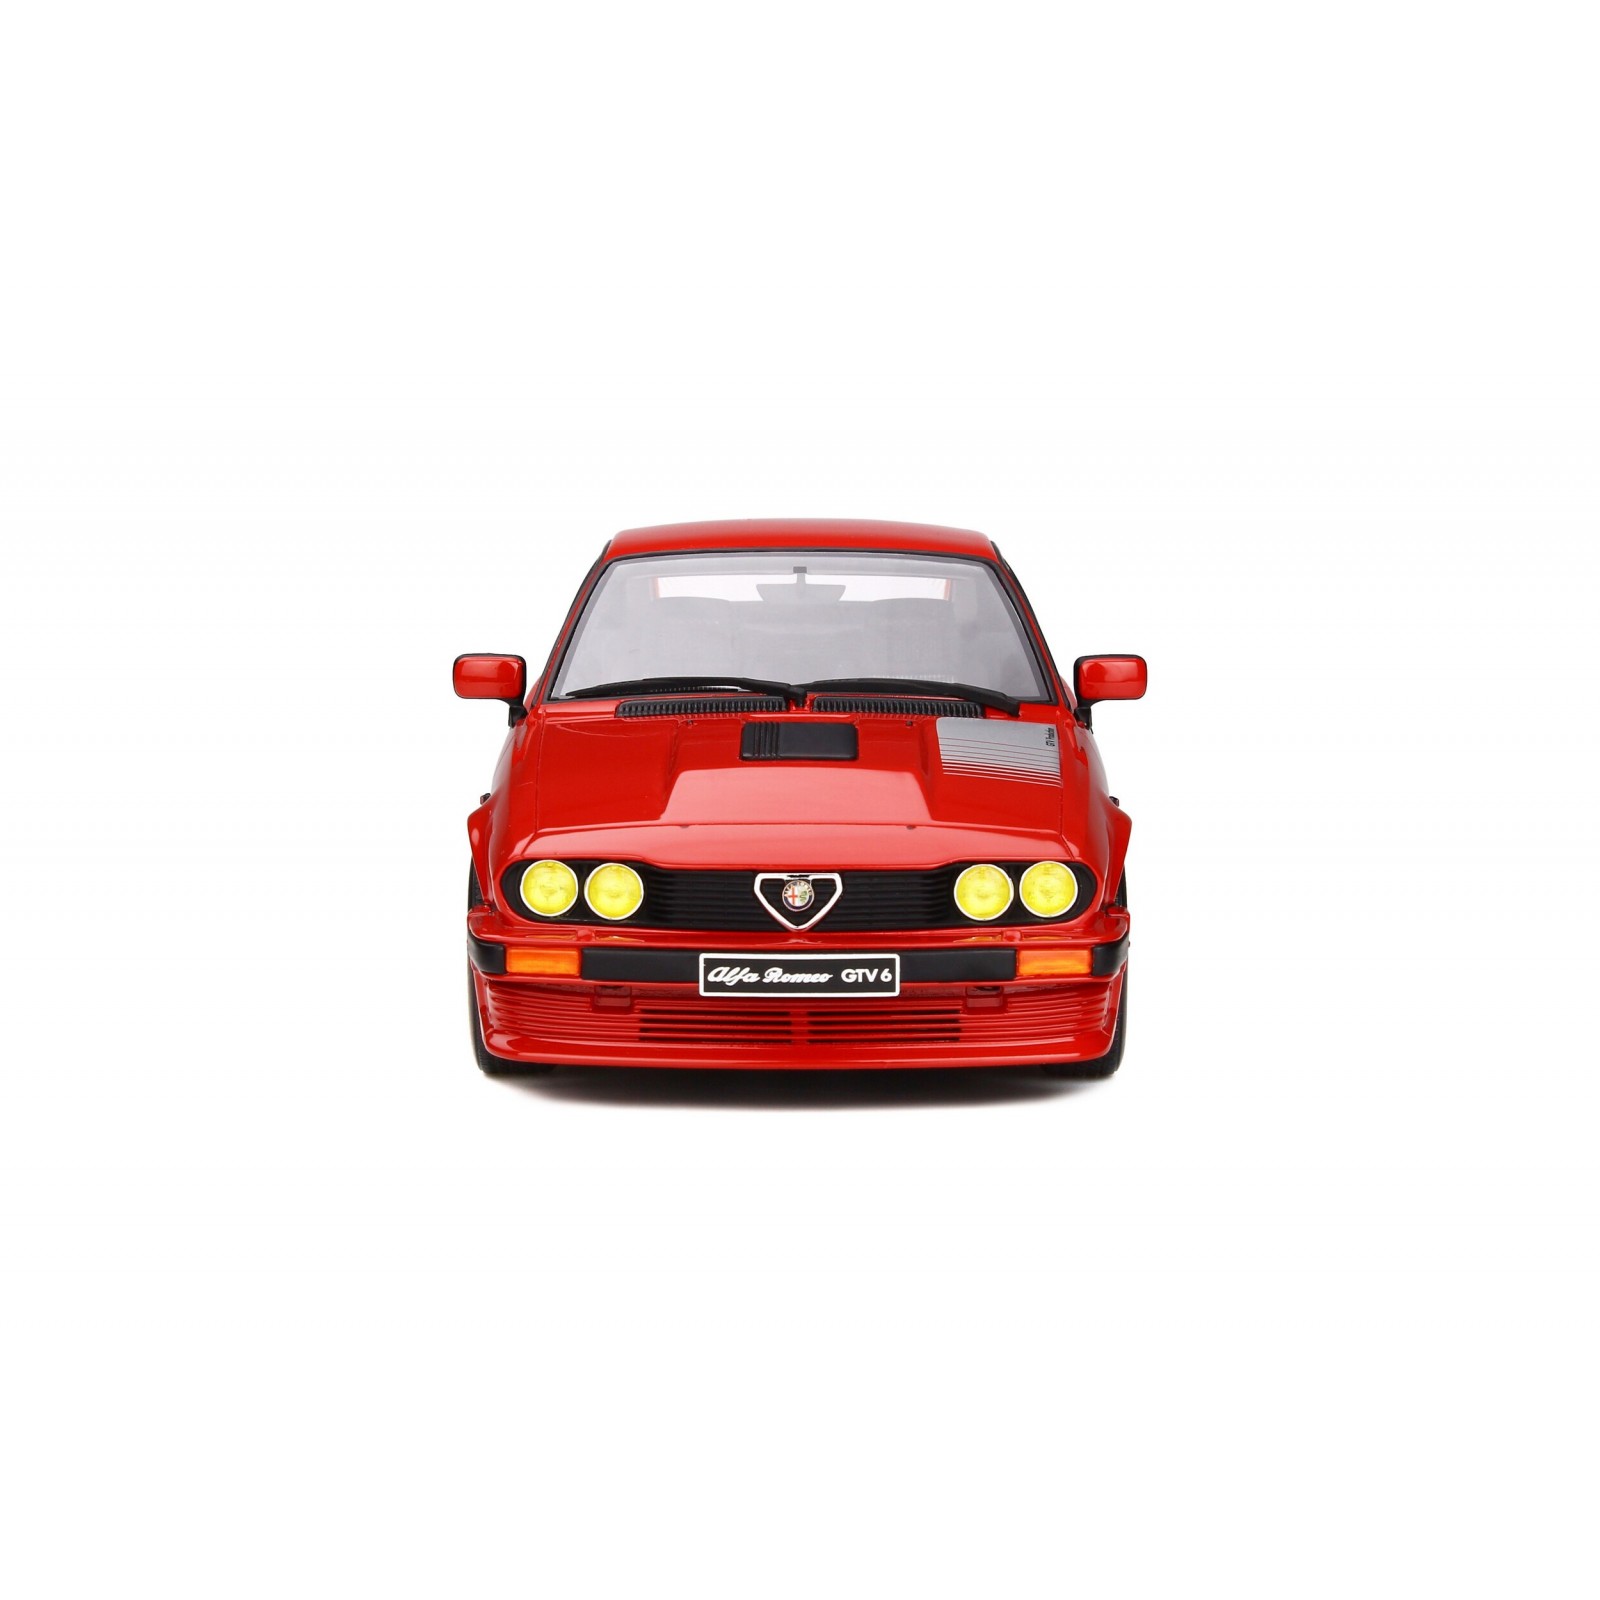 Alfa Romeo GTV6 Production